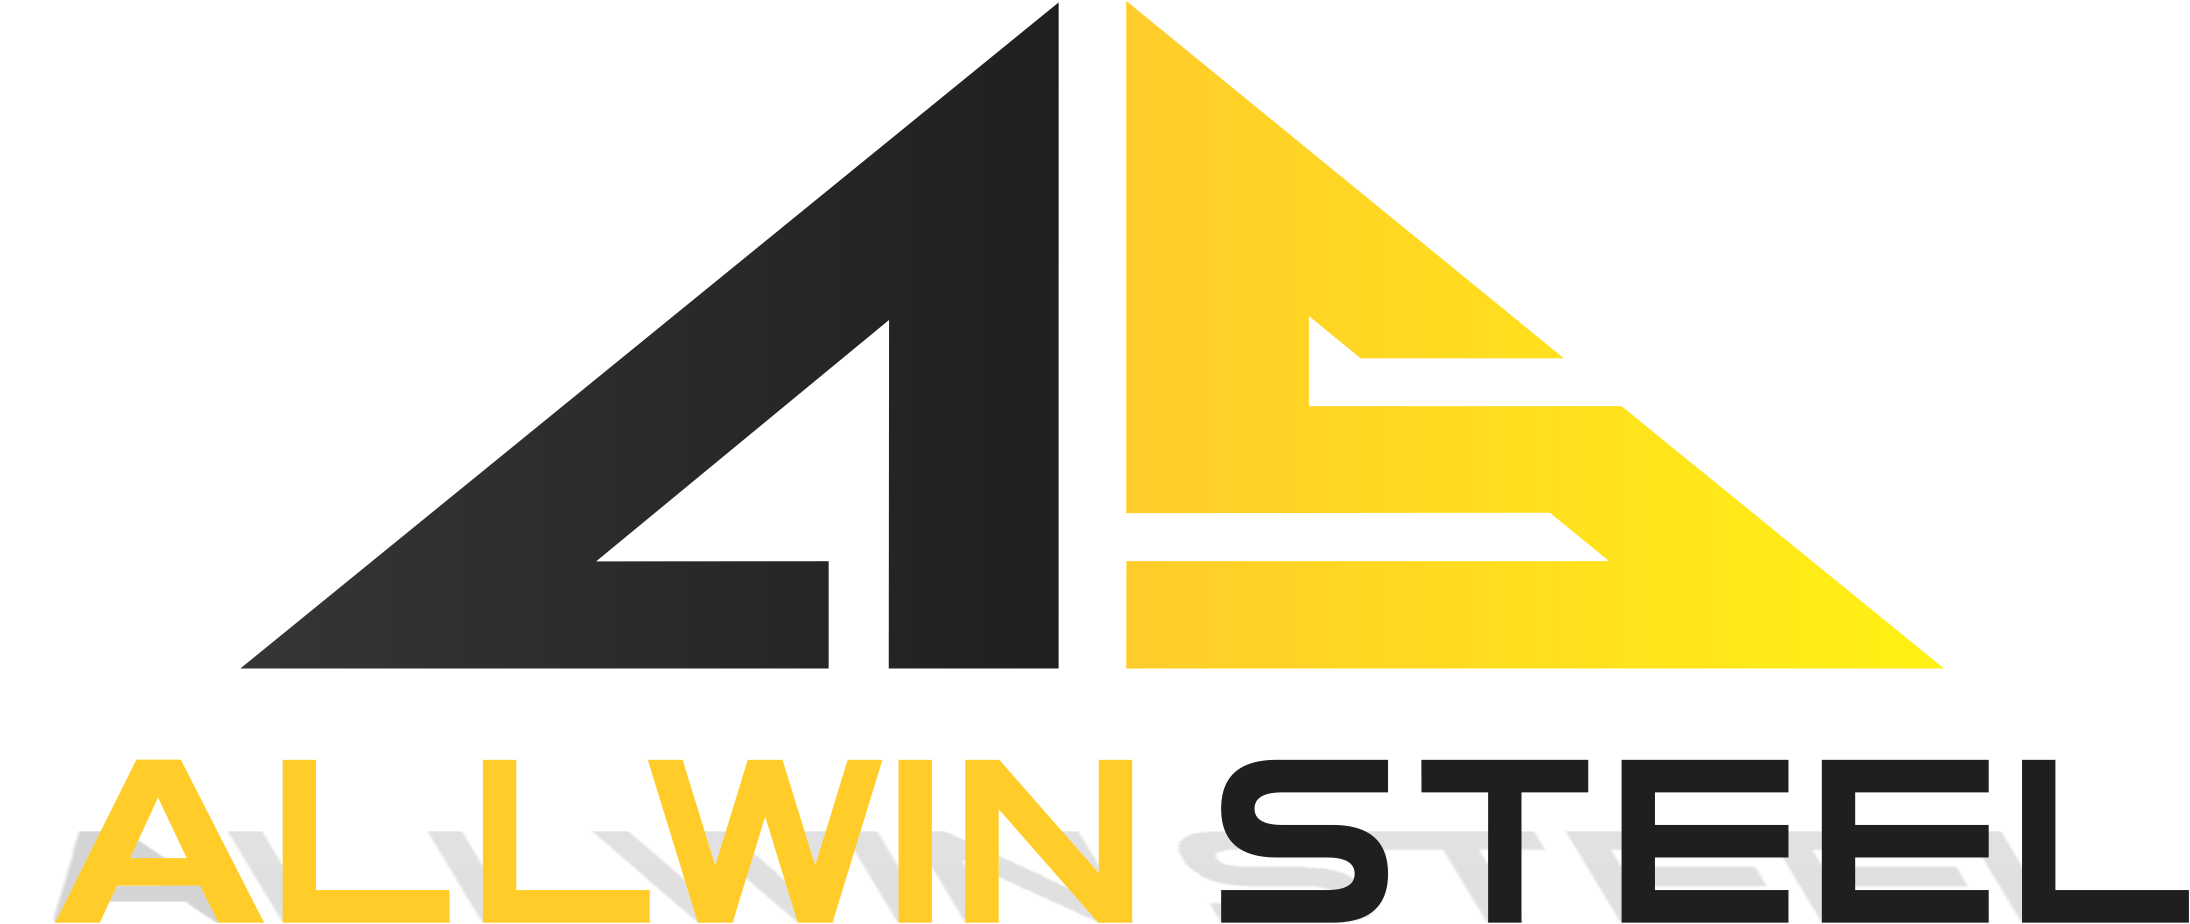 Allwin Steel Ltd